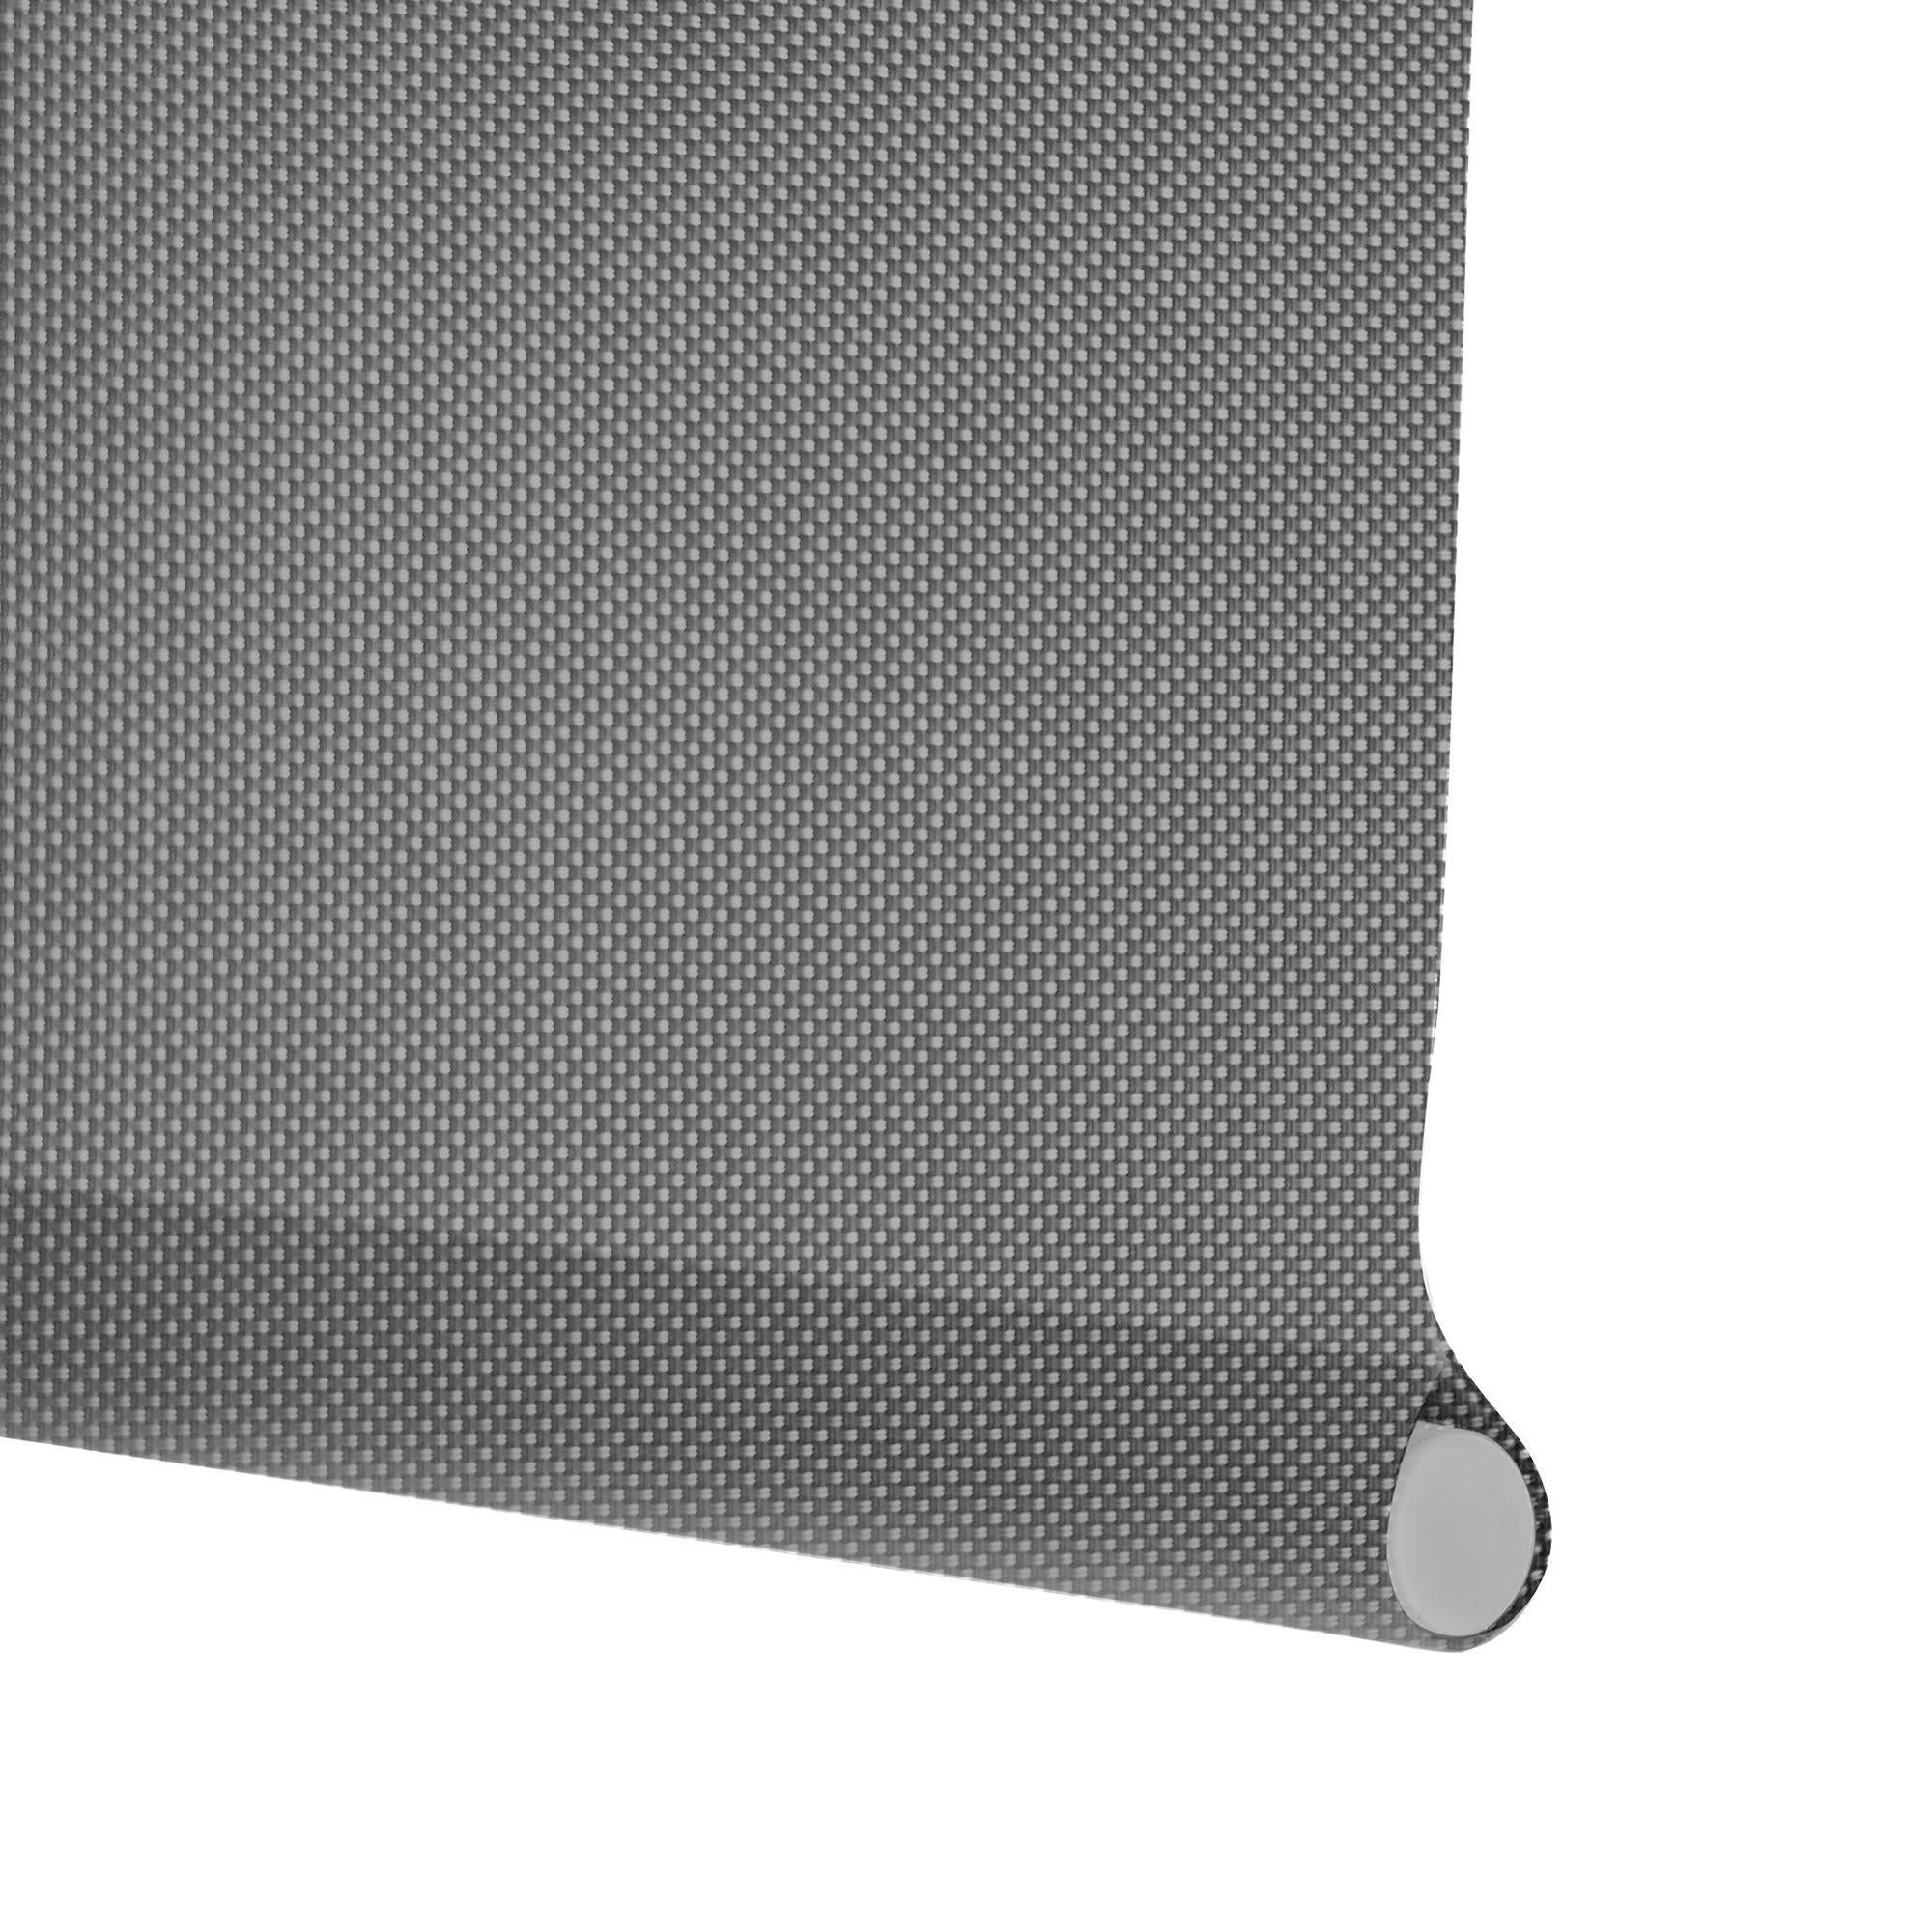 Tenda a rullo filtrante INSPIRE Screen grigio perla 150 x 250 cm - 3